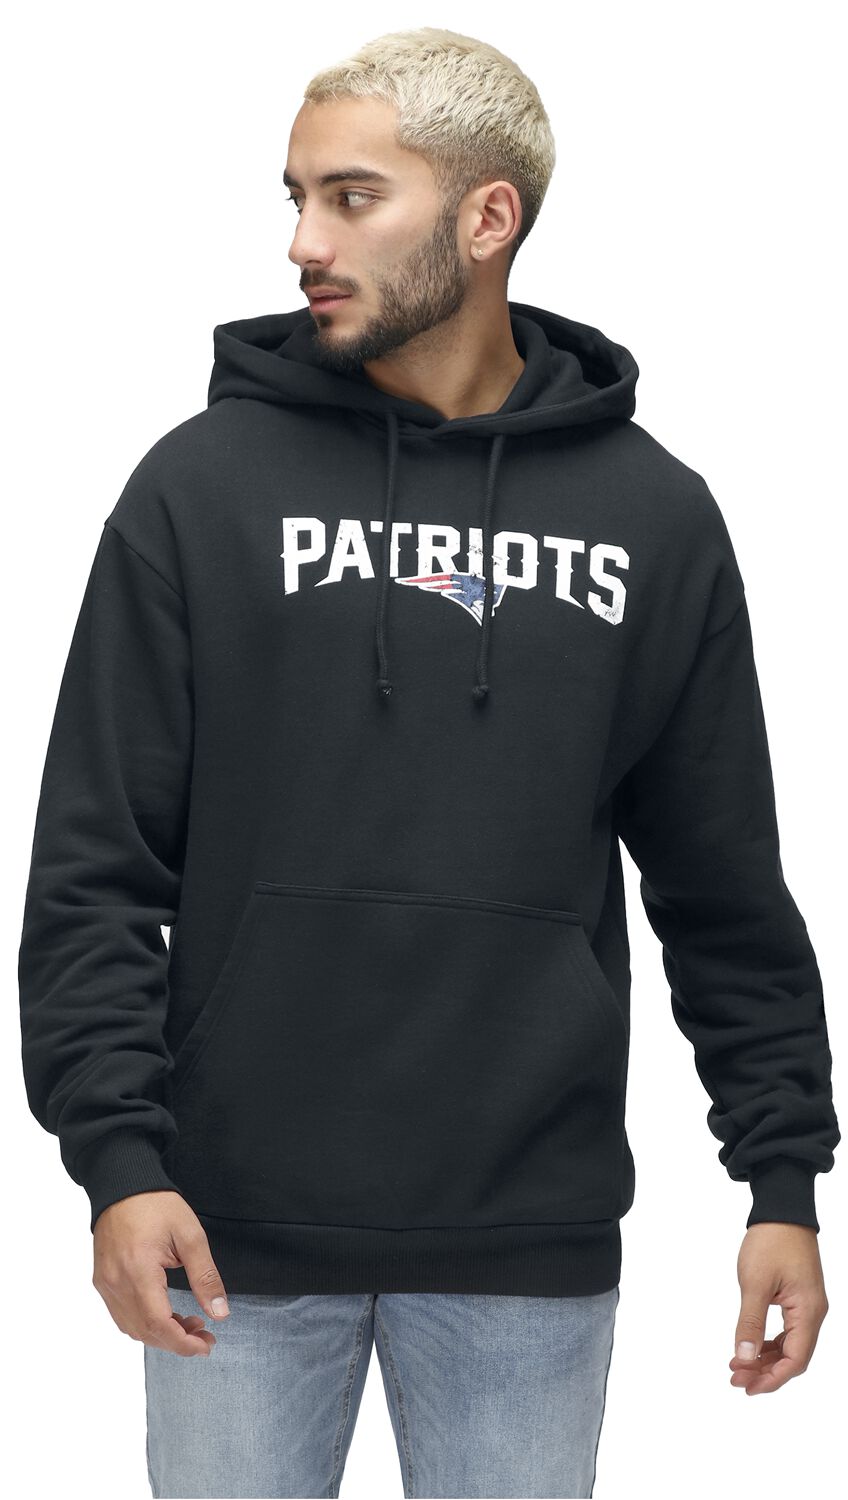 Image of Felpa con cappuccio di Recovered Clothing - NFL Patriots logo - S a M - Uomo - nero